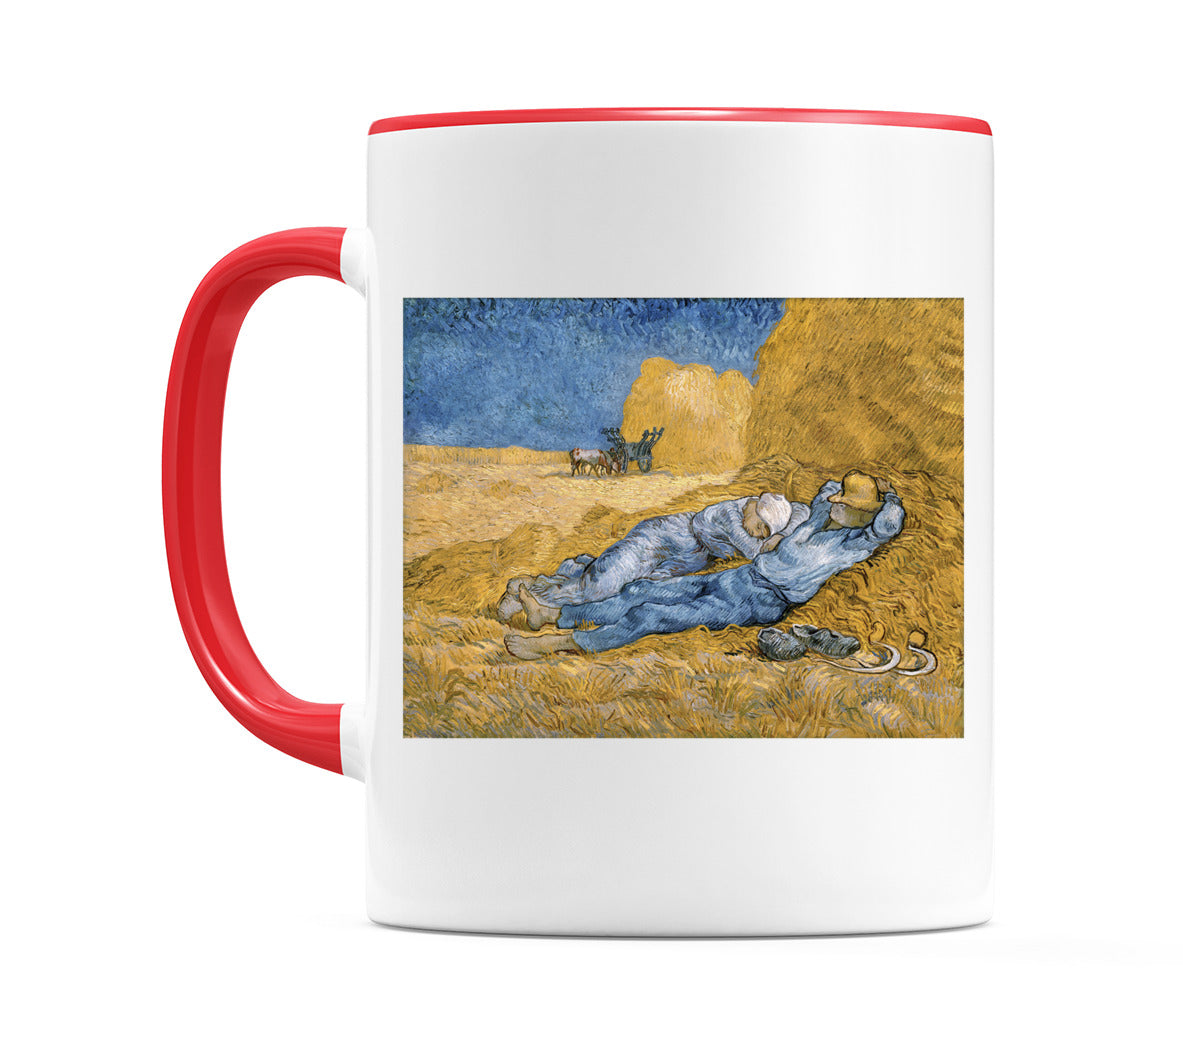 Vincent van Gogh's The Siesta (1890) Mug